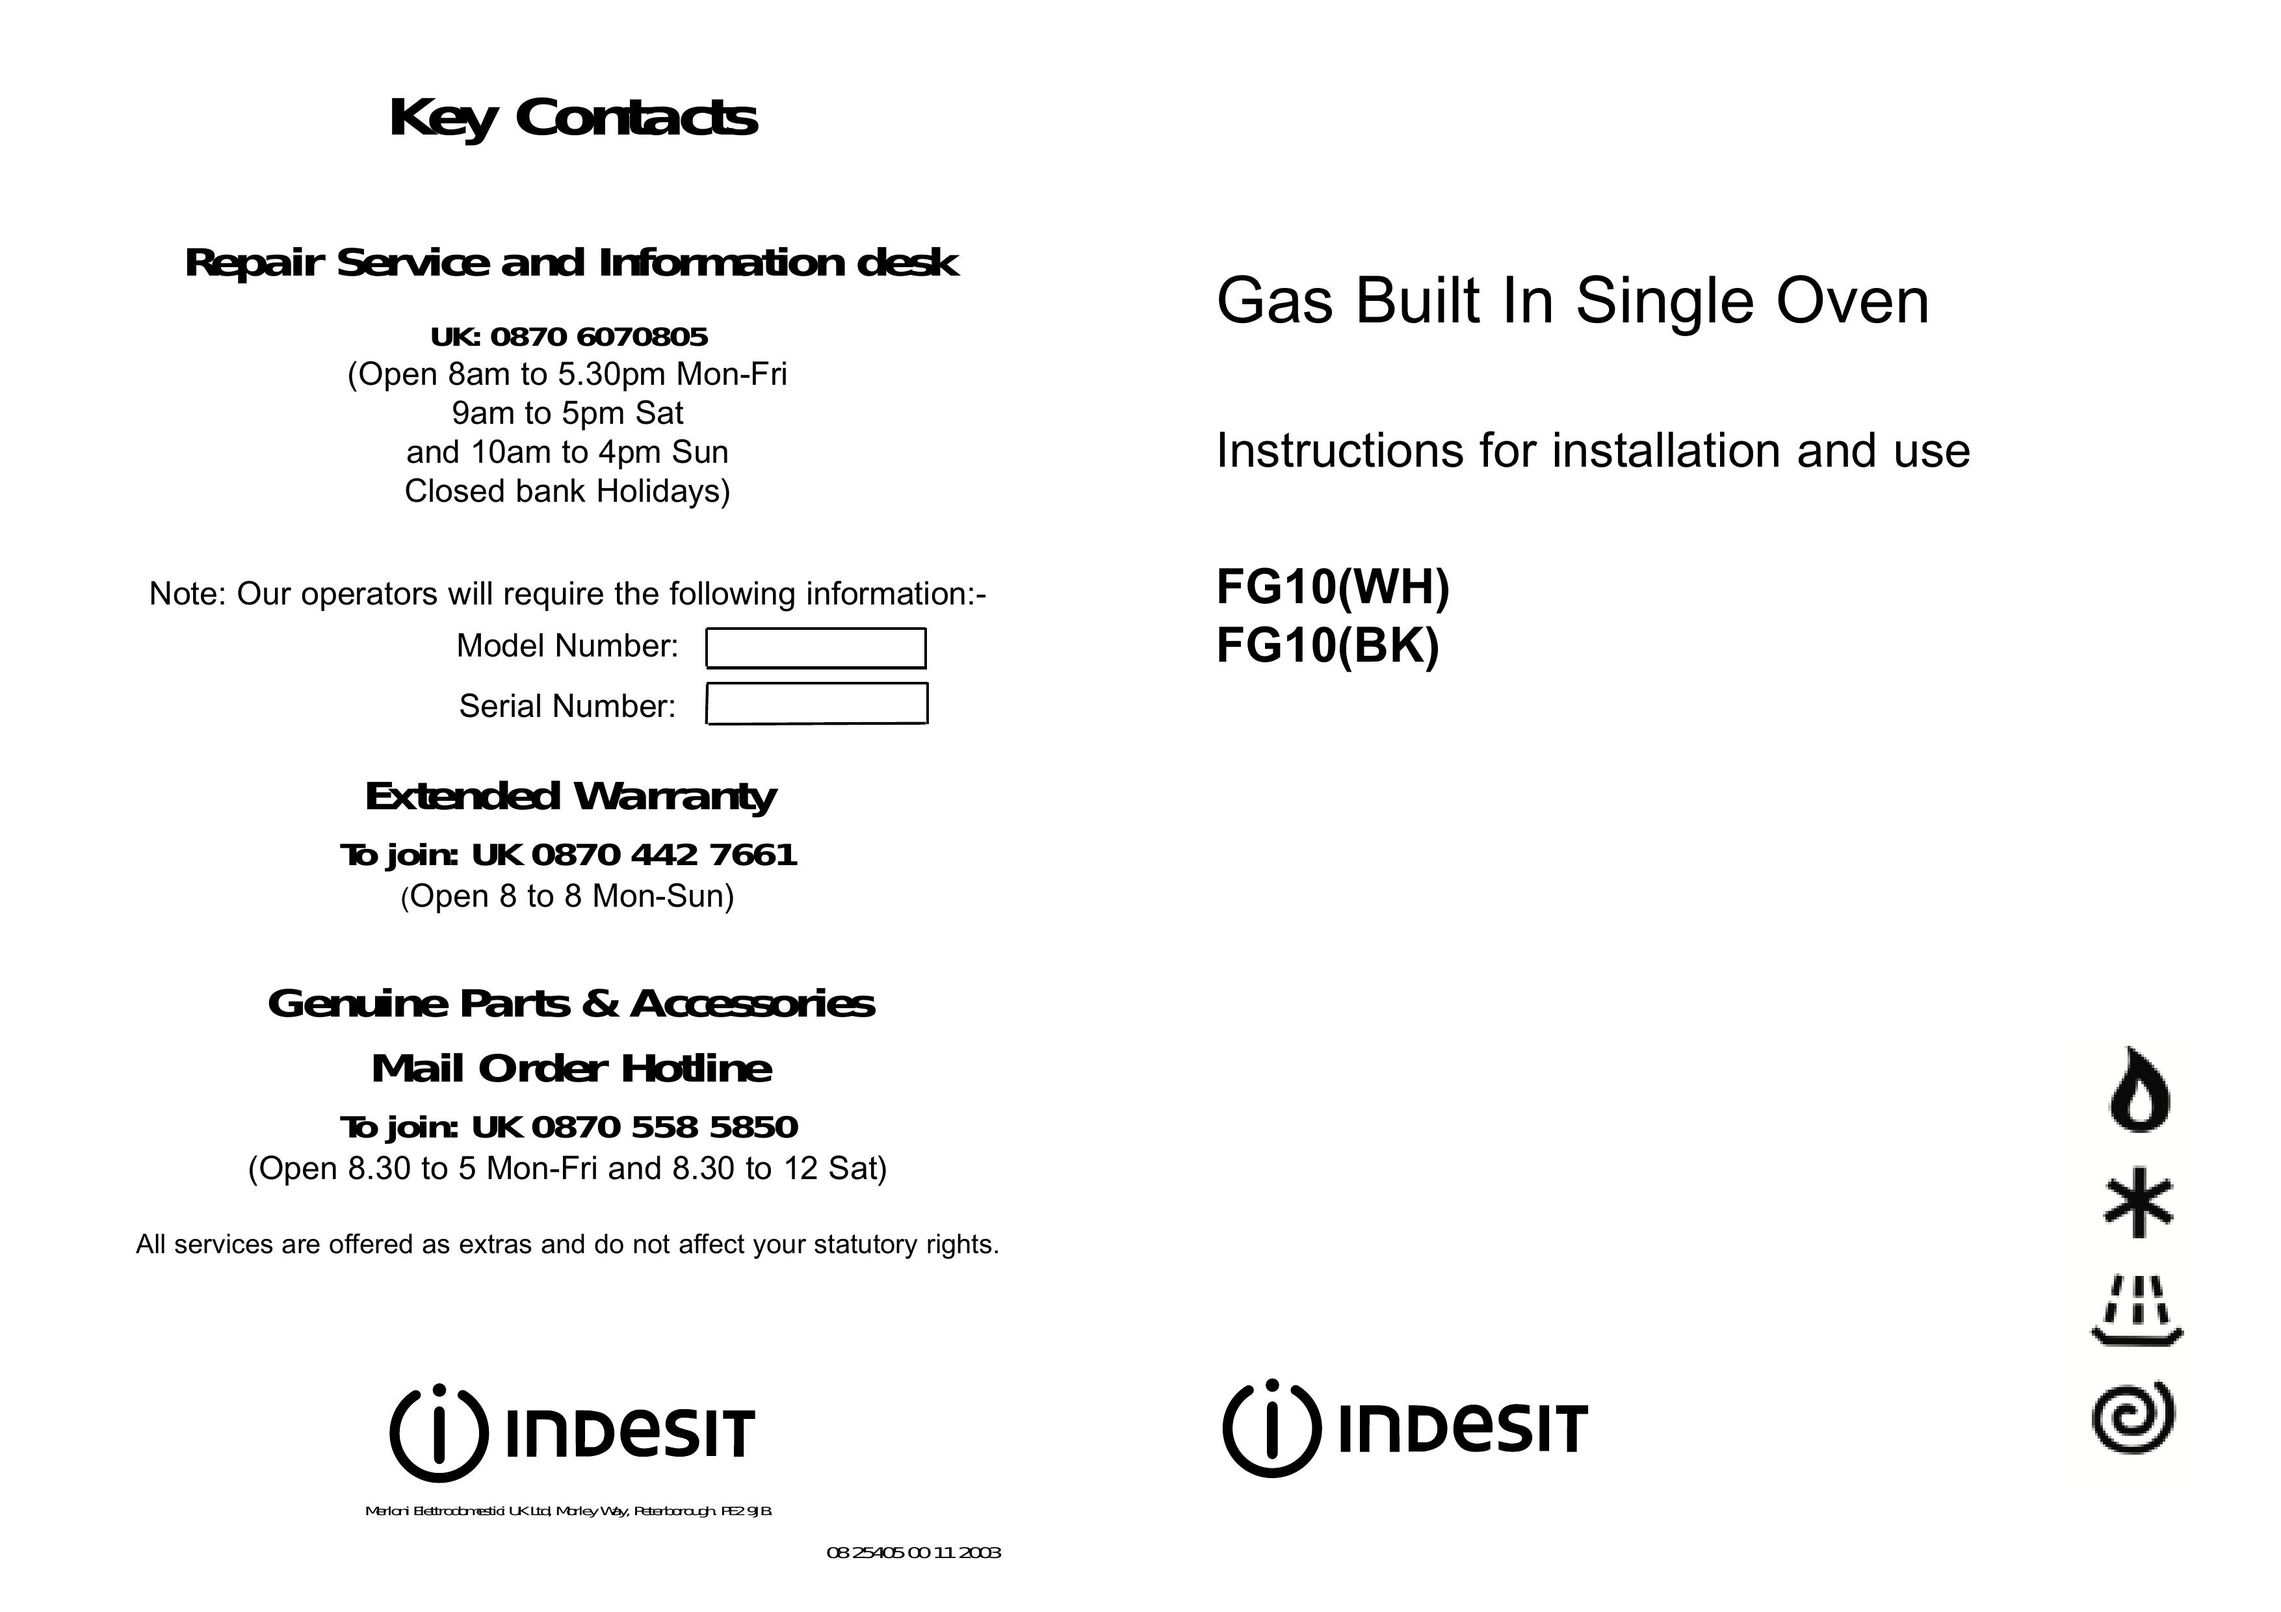 Indesit FG10(BK) Oven User Manual